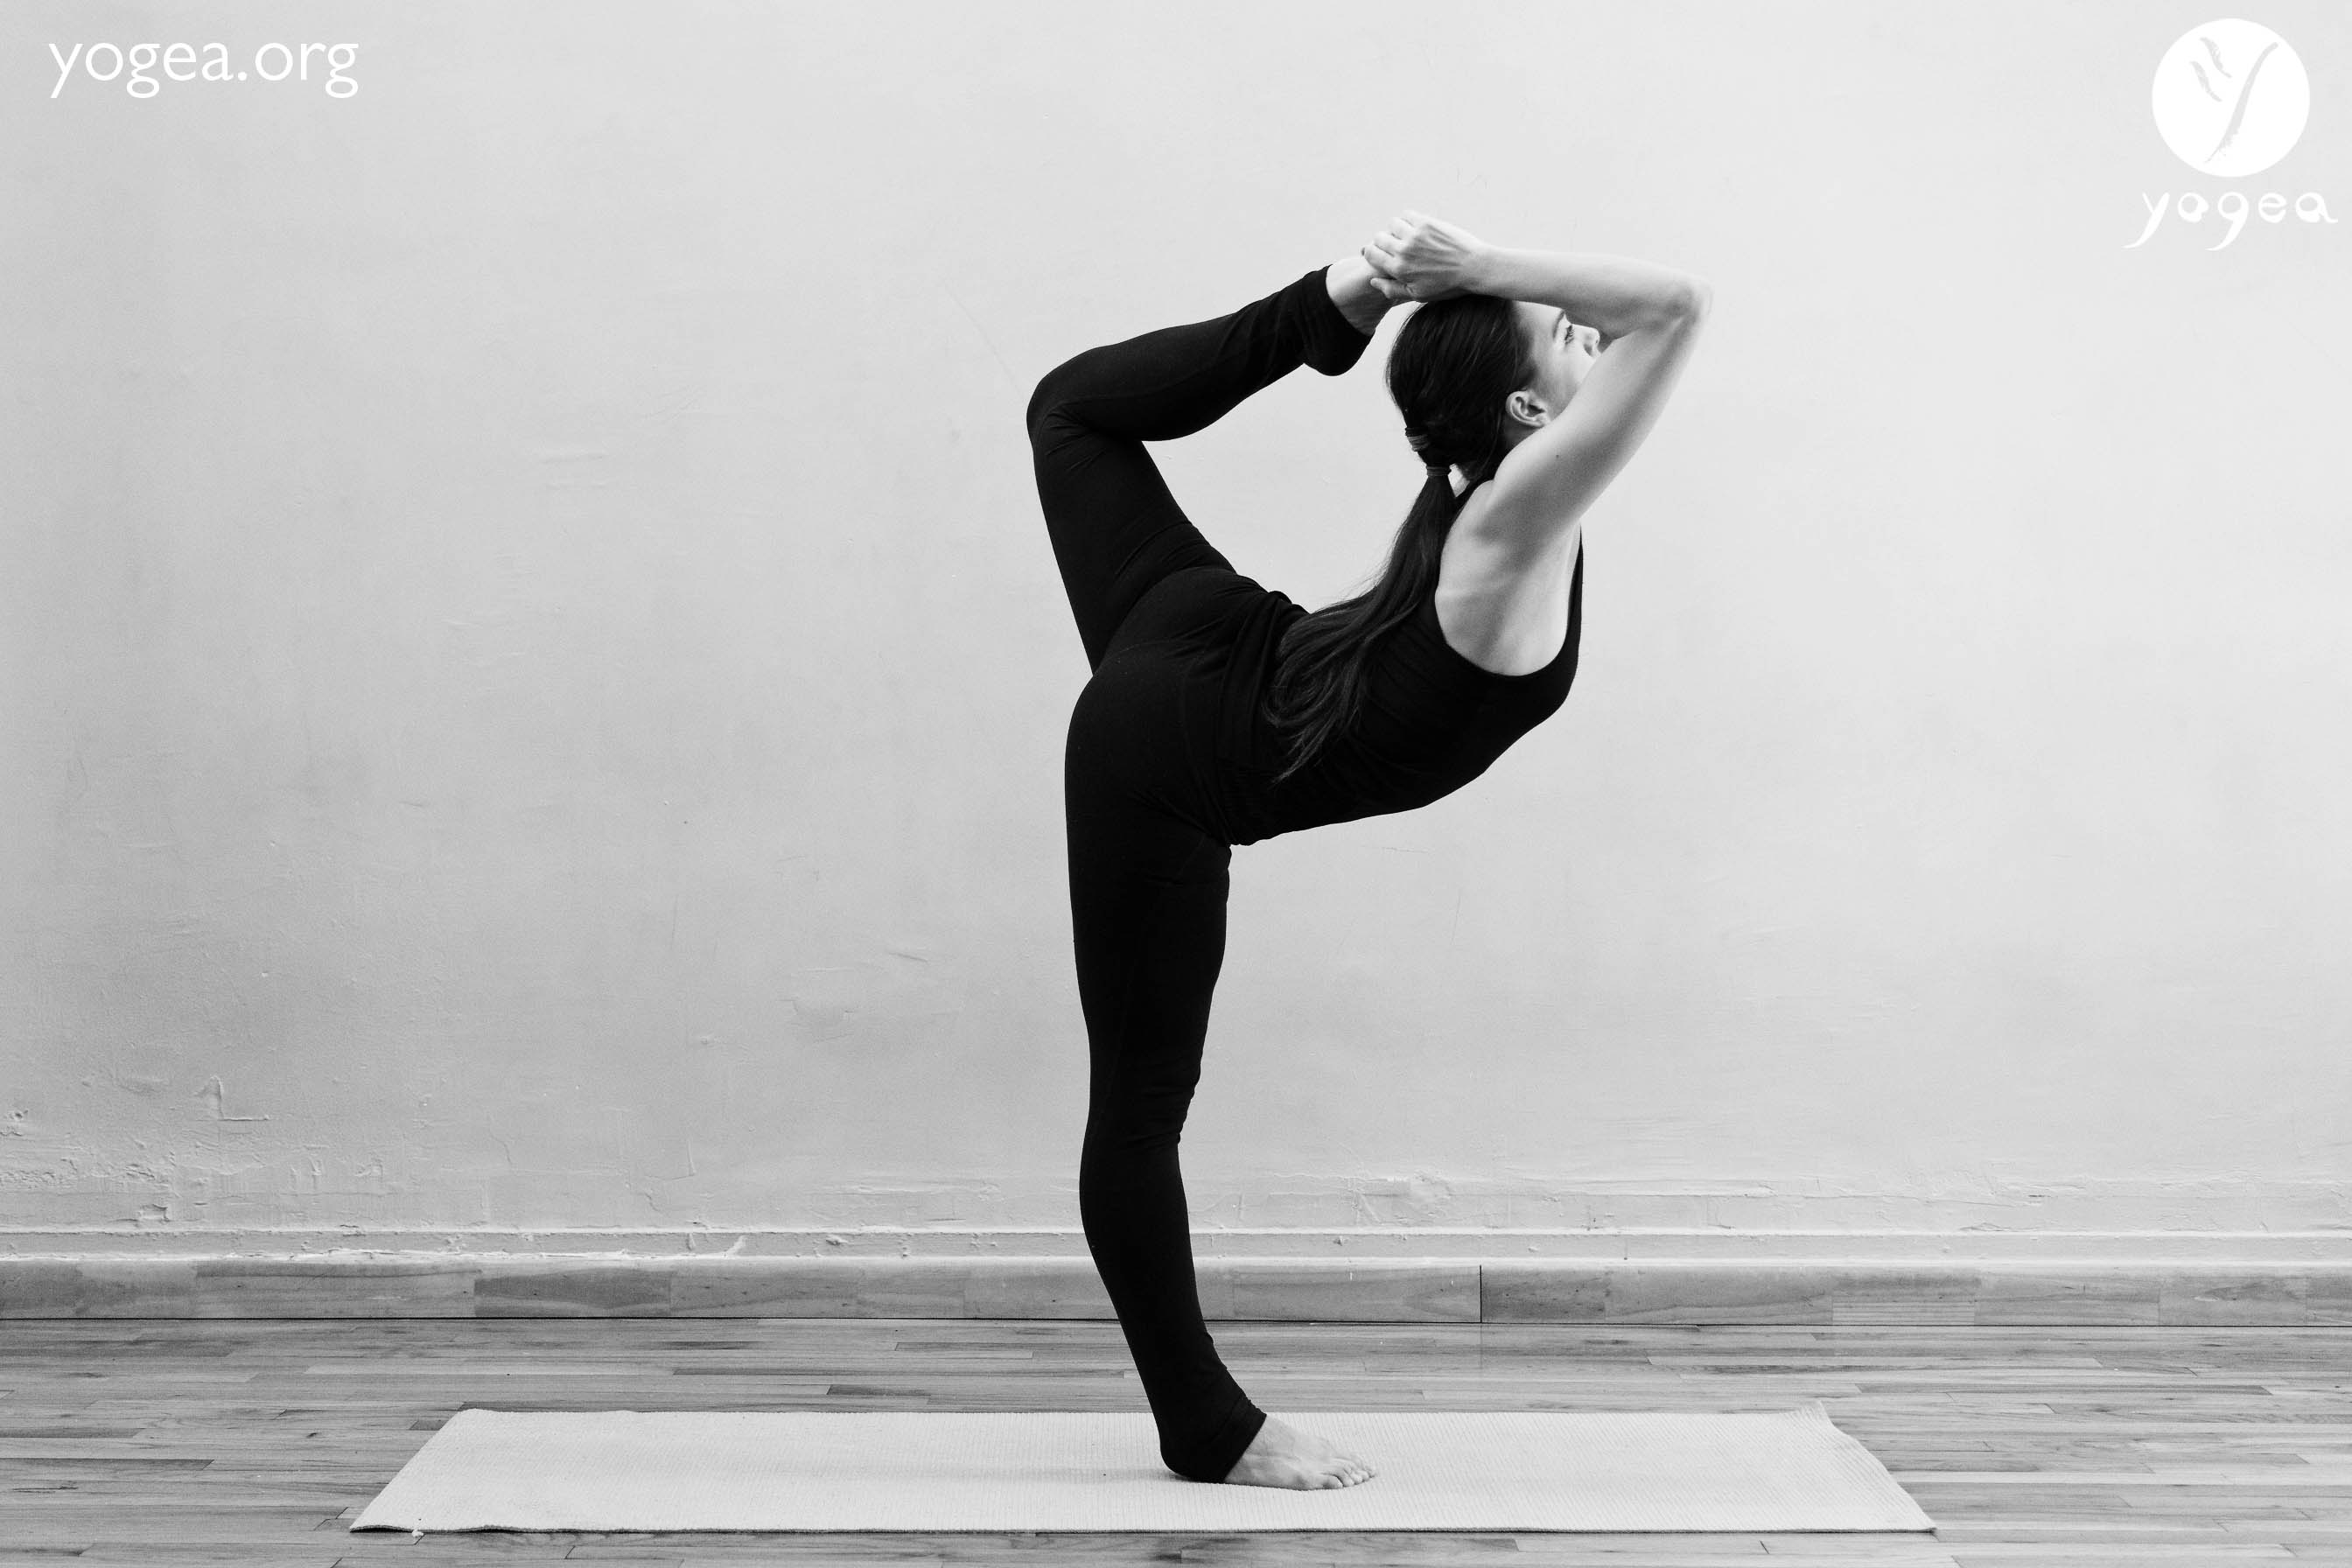 Yoga Tutorial: How to Do Cobra Pose - Yoga by Karina